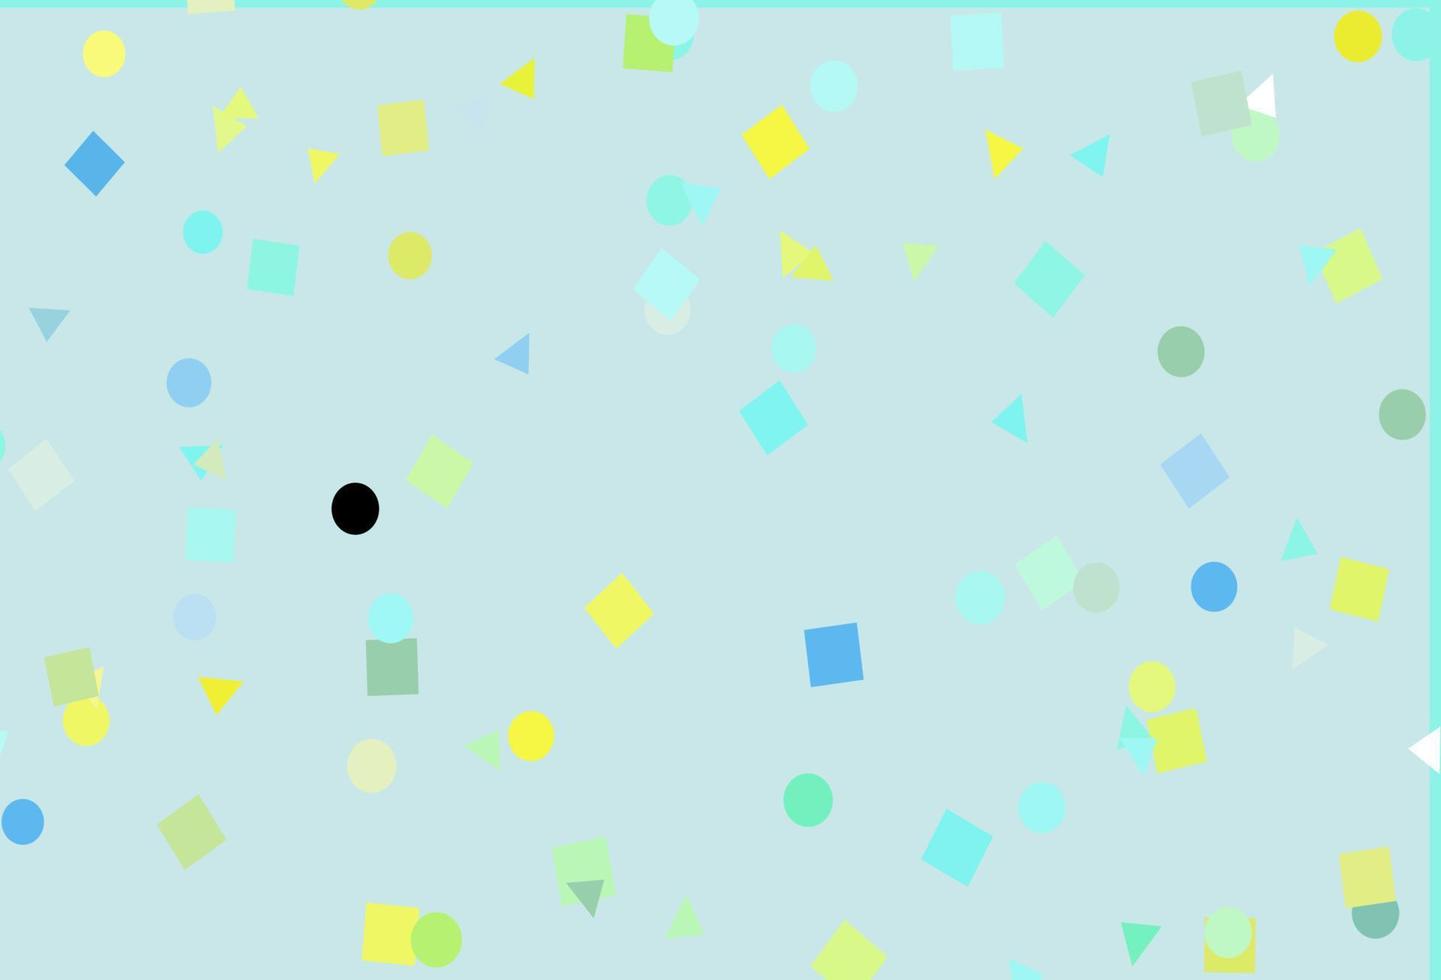 patrón de vector verde claro, amarillo en estilo poligonal con círculos.